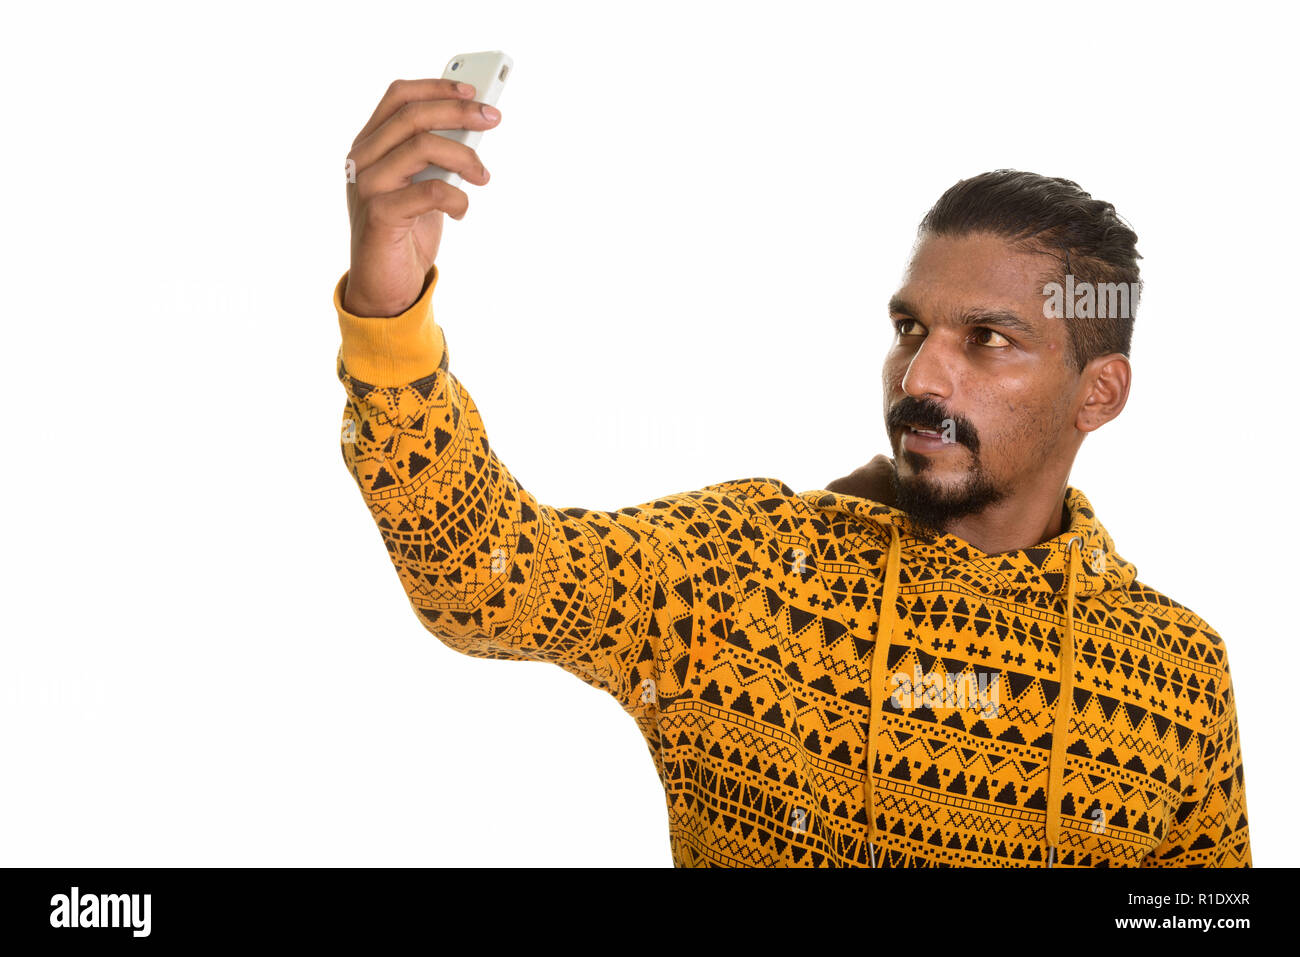 Junge Inder unter selfie mit Handy Stockfoto